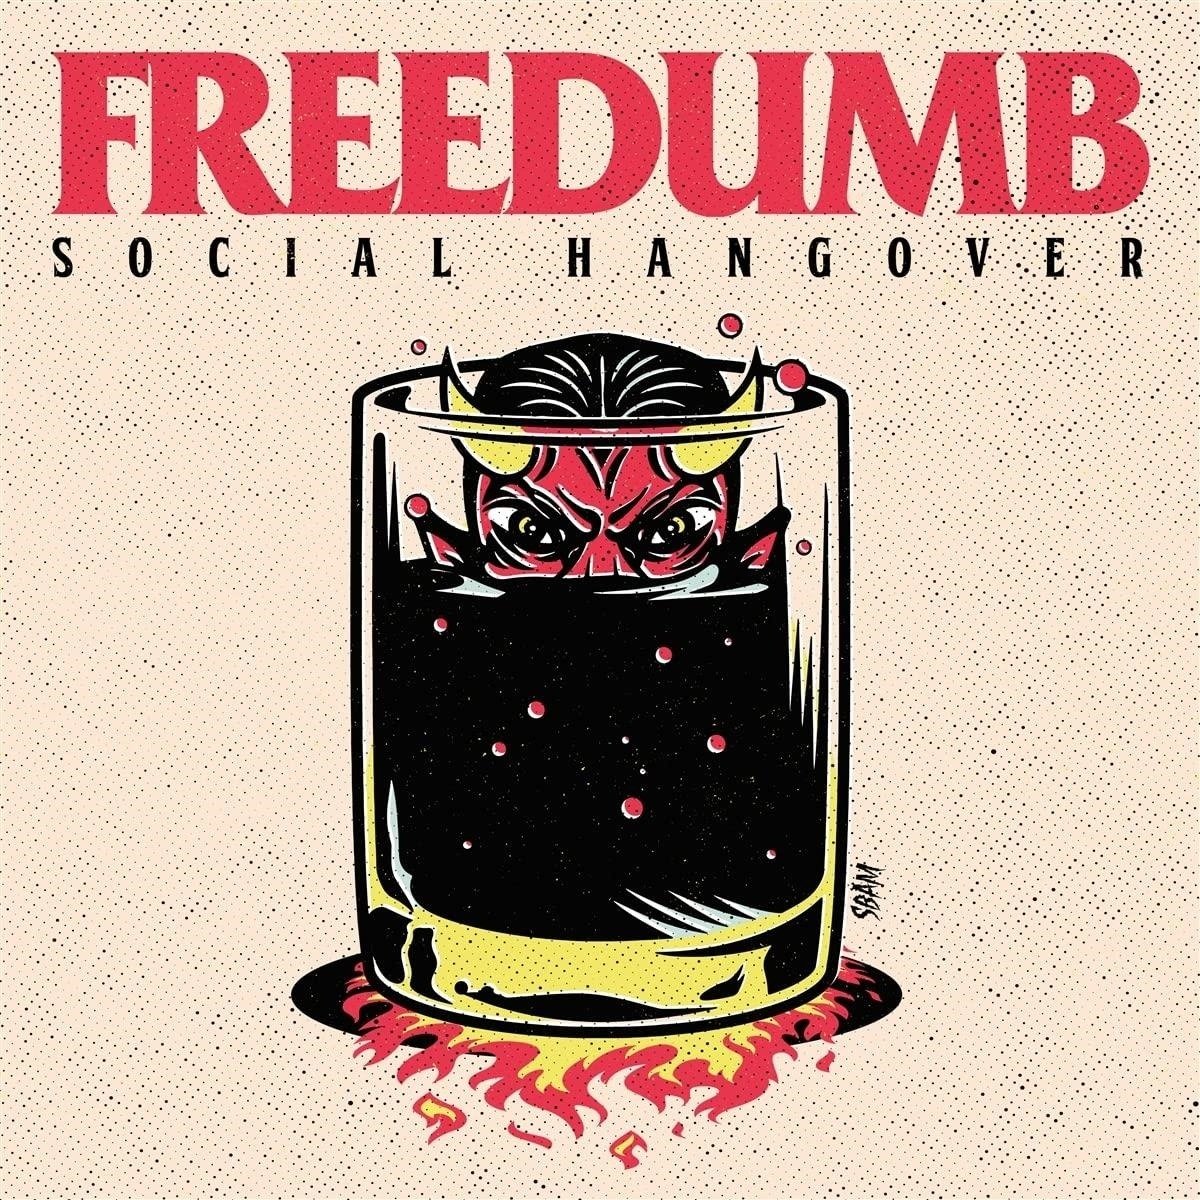 CD Shop - FREEDUMB SOCIAL HANGOVER